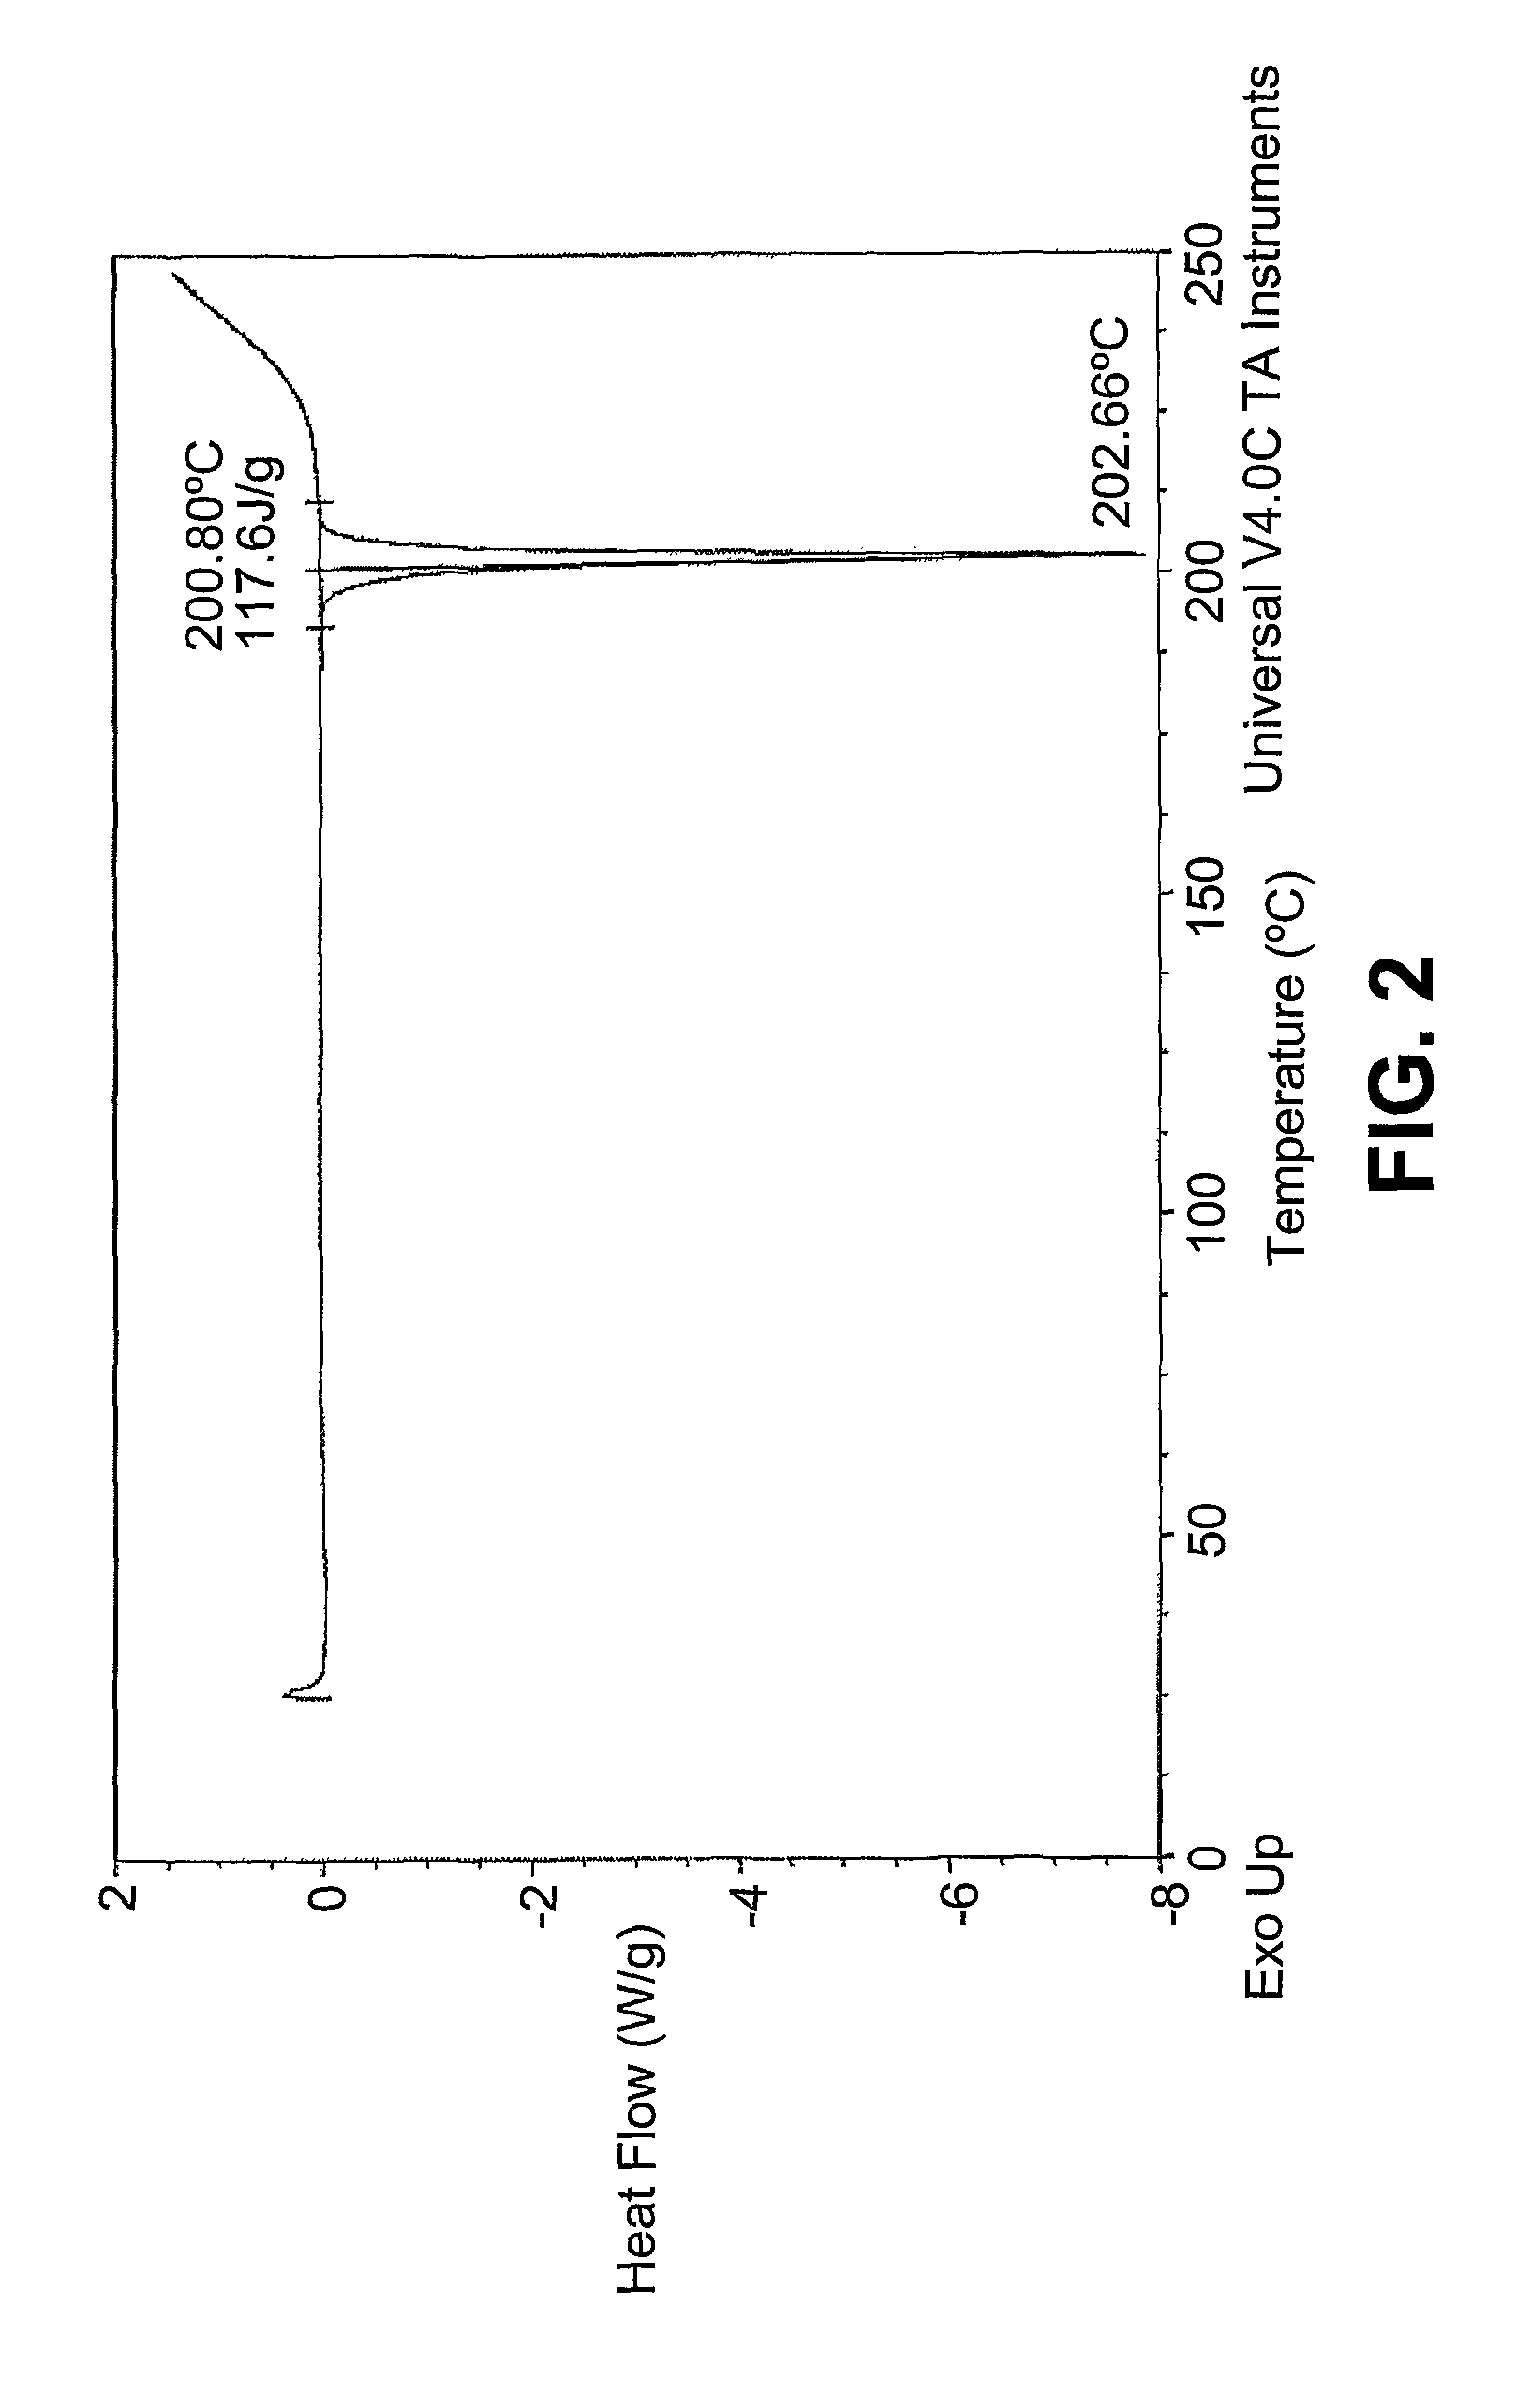 Polymorphs of a c-MET/HGFR inhibitor